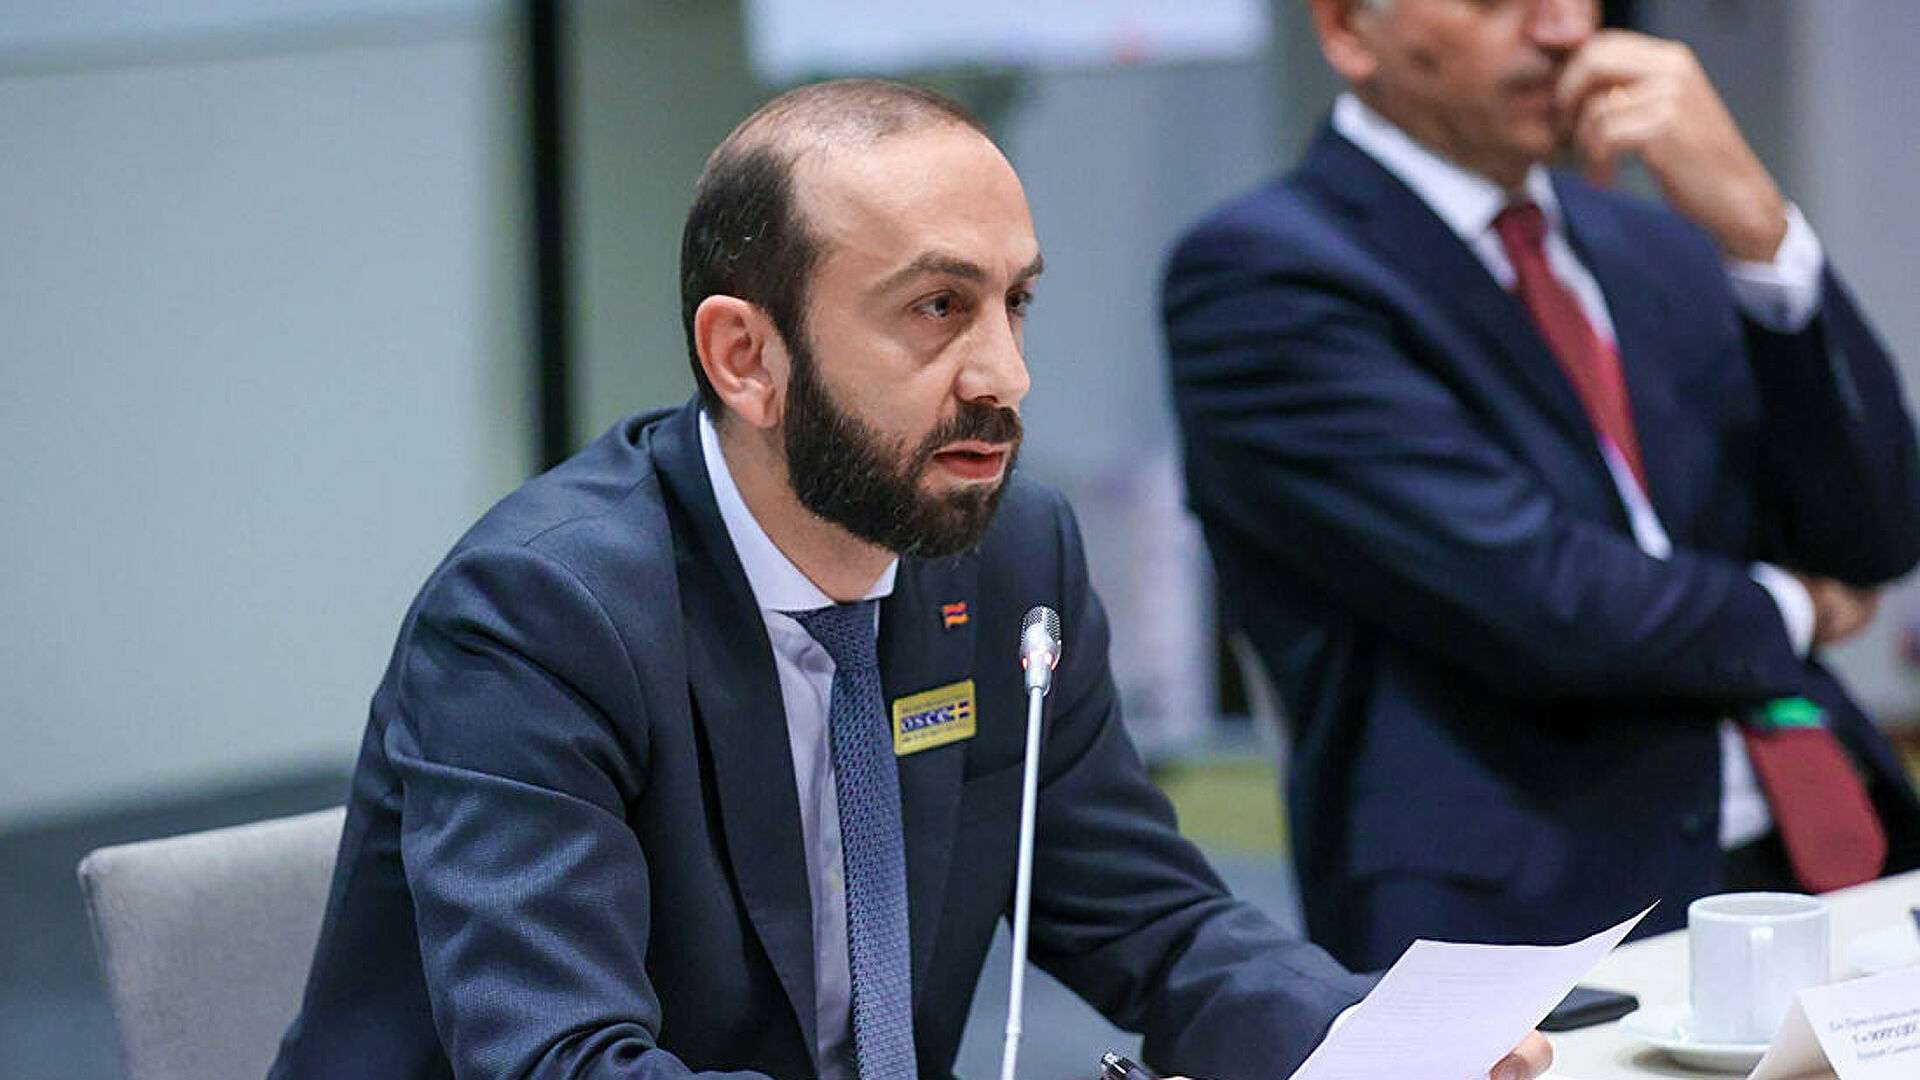 Ermenistan Dışişleri Bakanı: "Ermenistan kimseye karşı herhangi bir plana dahil değildir"